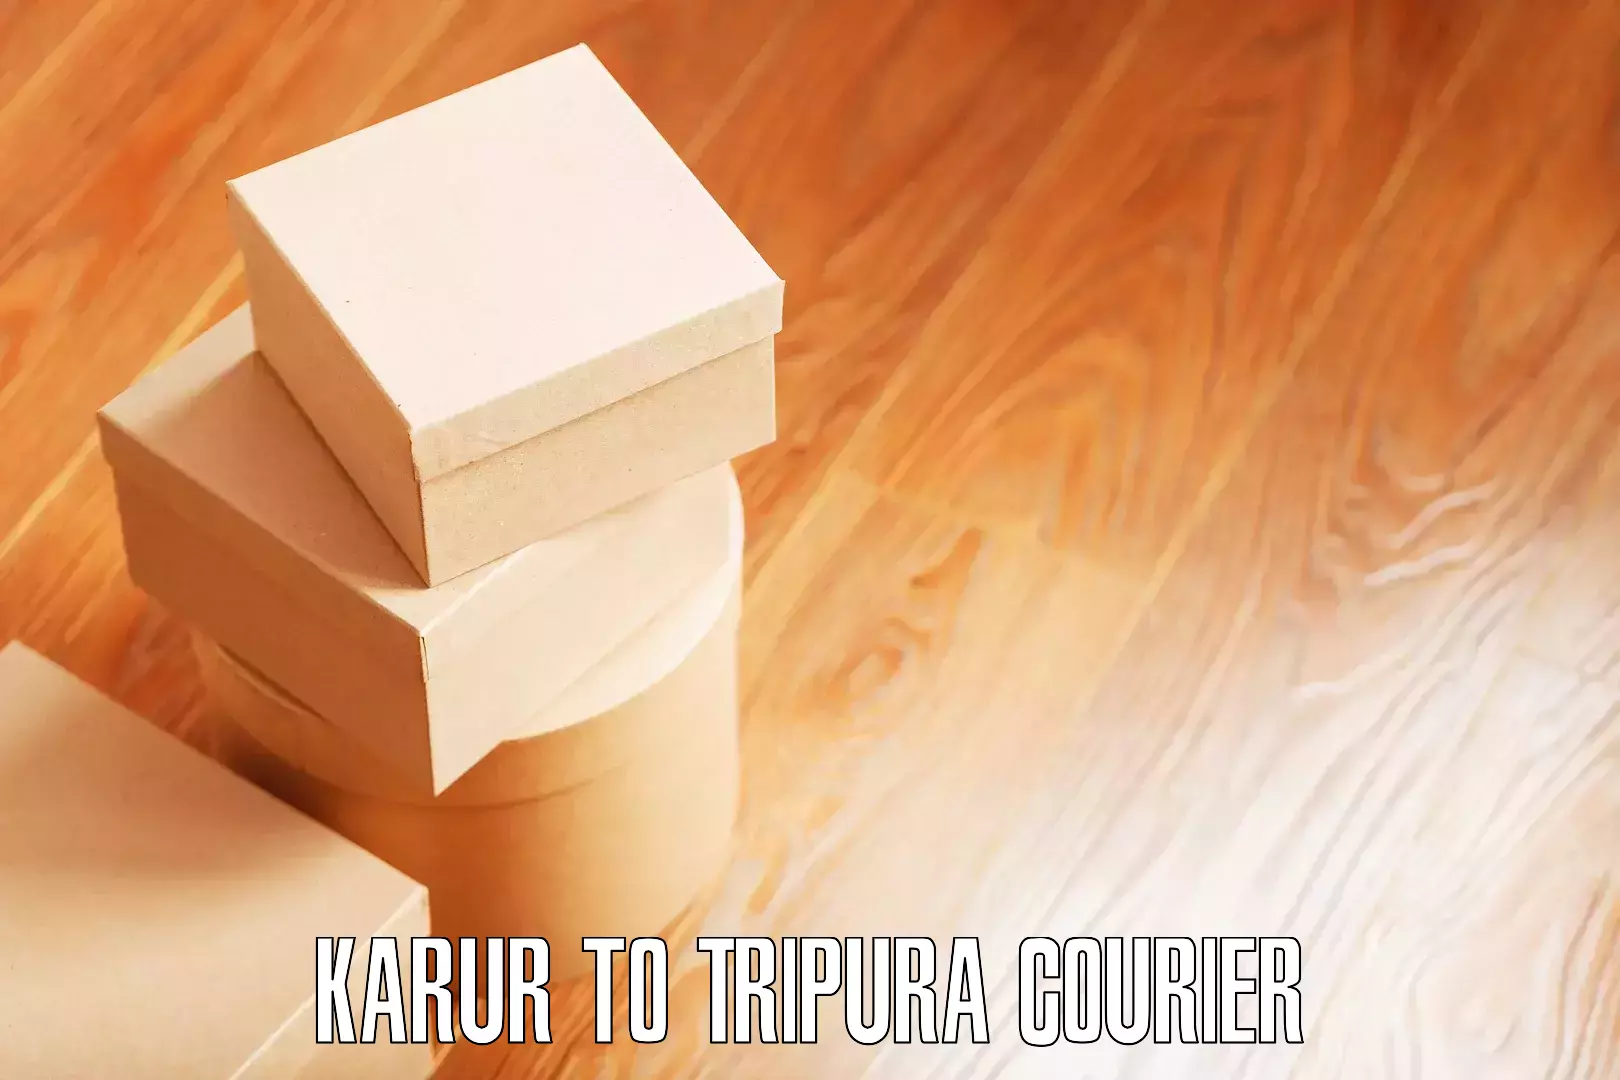 Furniture delivery service Karur to Amarpur